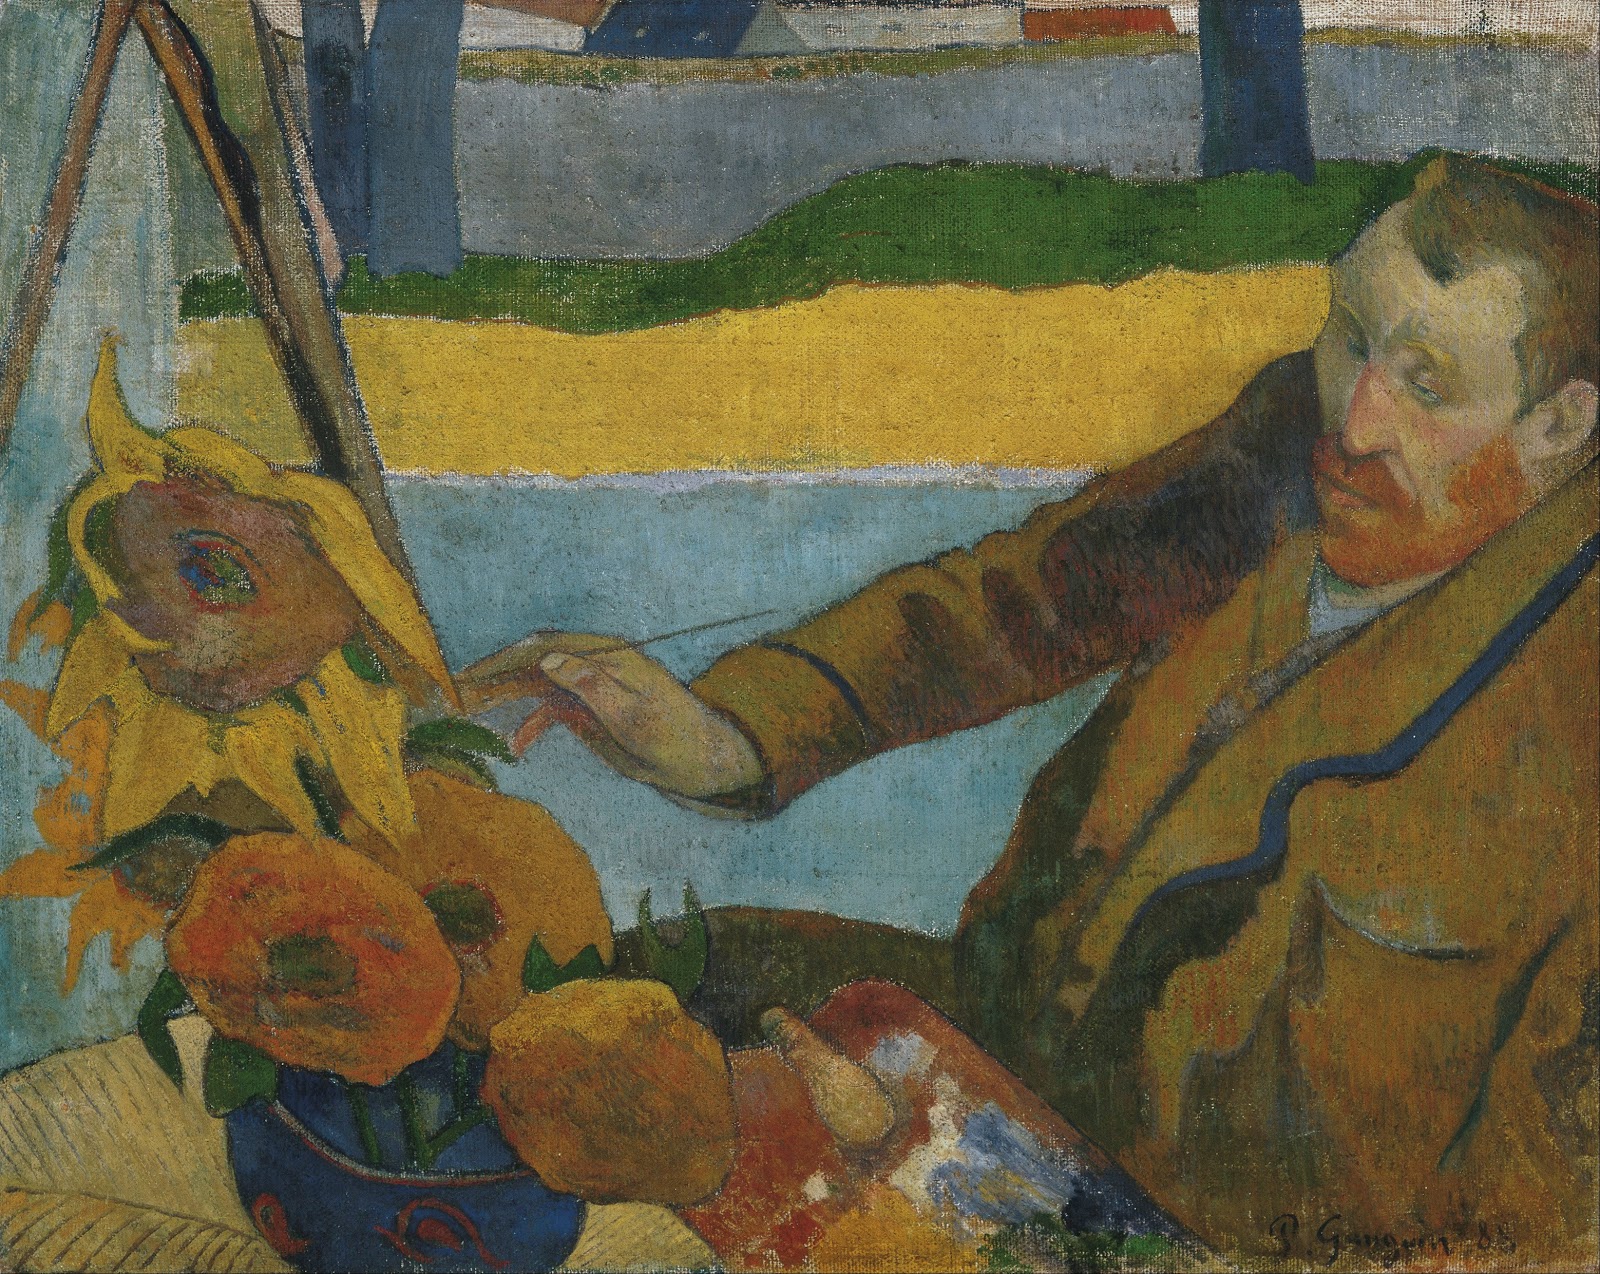 Paul+Gauguin-1848-1903 (503).jpg